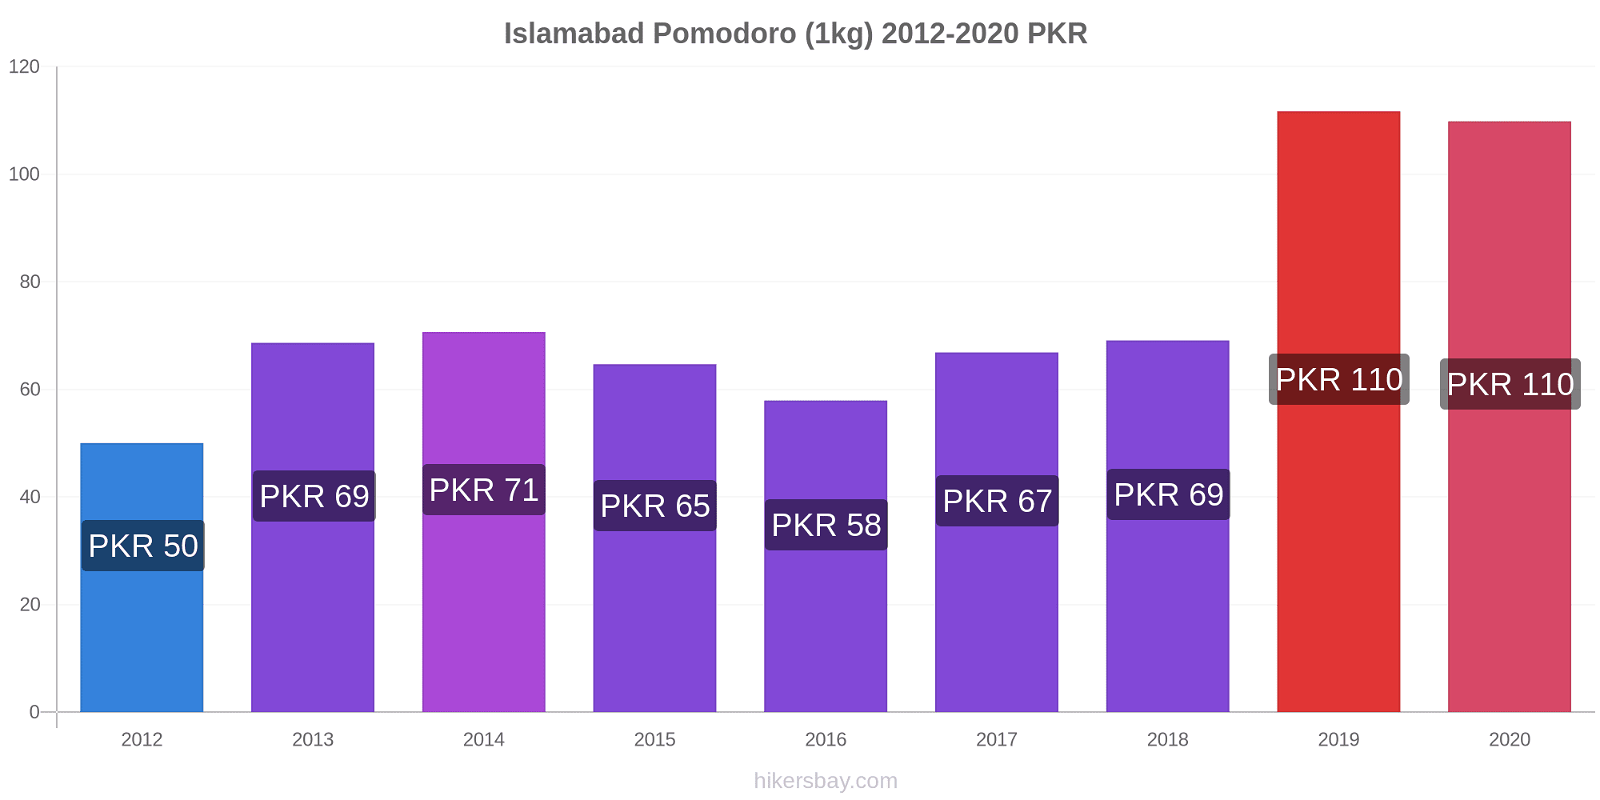 Islamabad variazioni di prezzo Pomodoro (1kg) hikersbay.com